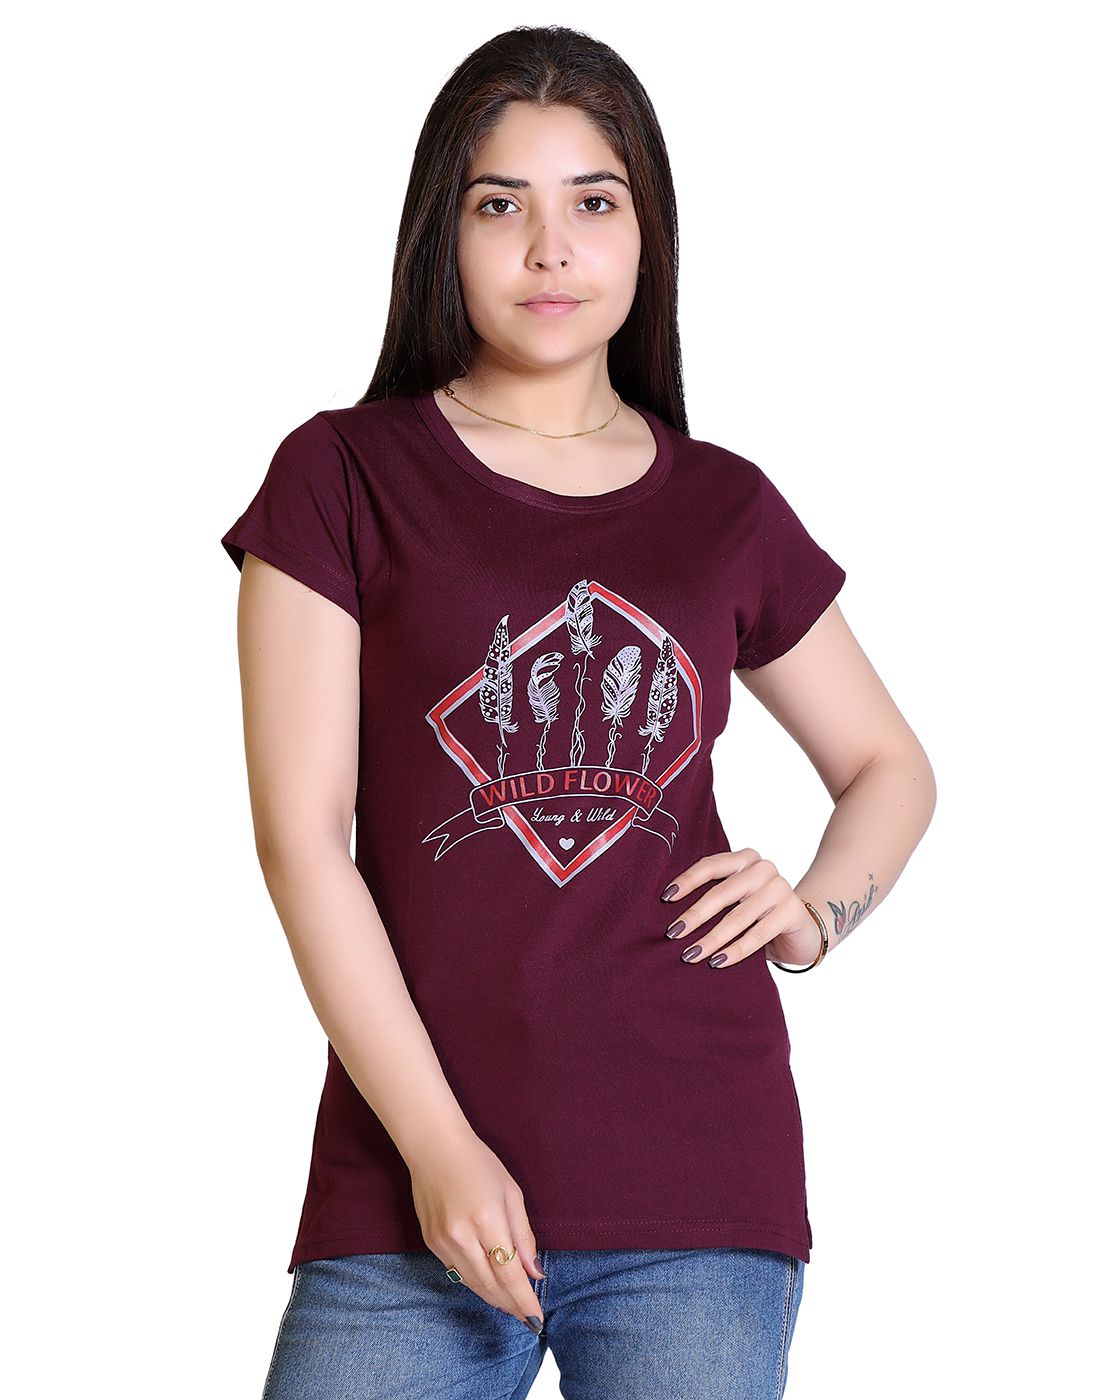     			Ogarti - Wine Cotton Blend Regular Fit Women's T-Shirt ( Pack of 1 )